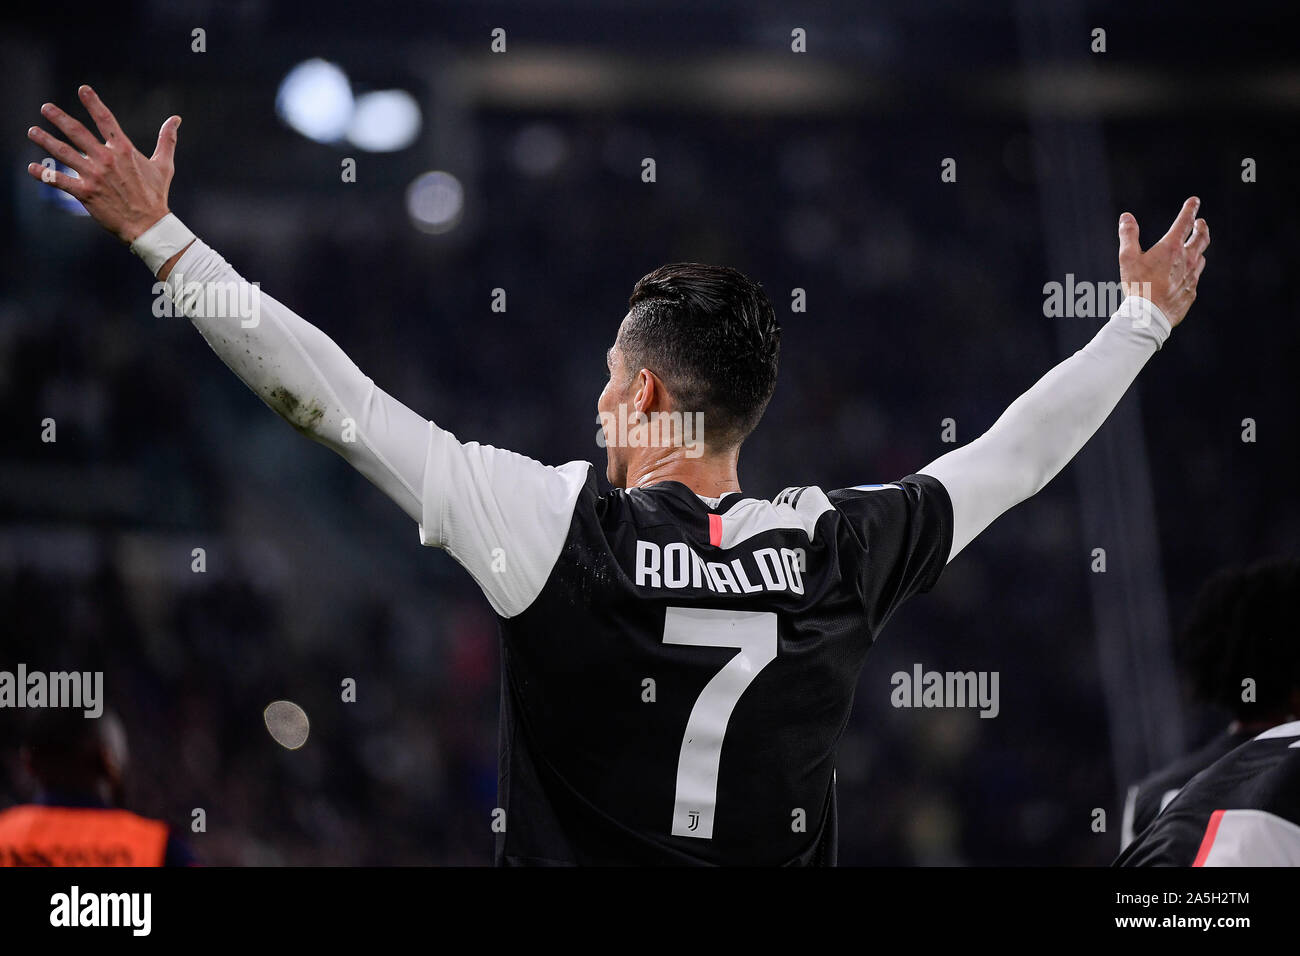 Cristiano Ronaldo, joueur de la Juventus lors de la Juventus - Bologne match de foot dans le stade Allianz à Turin Banque D'Images